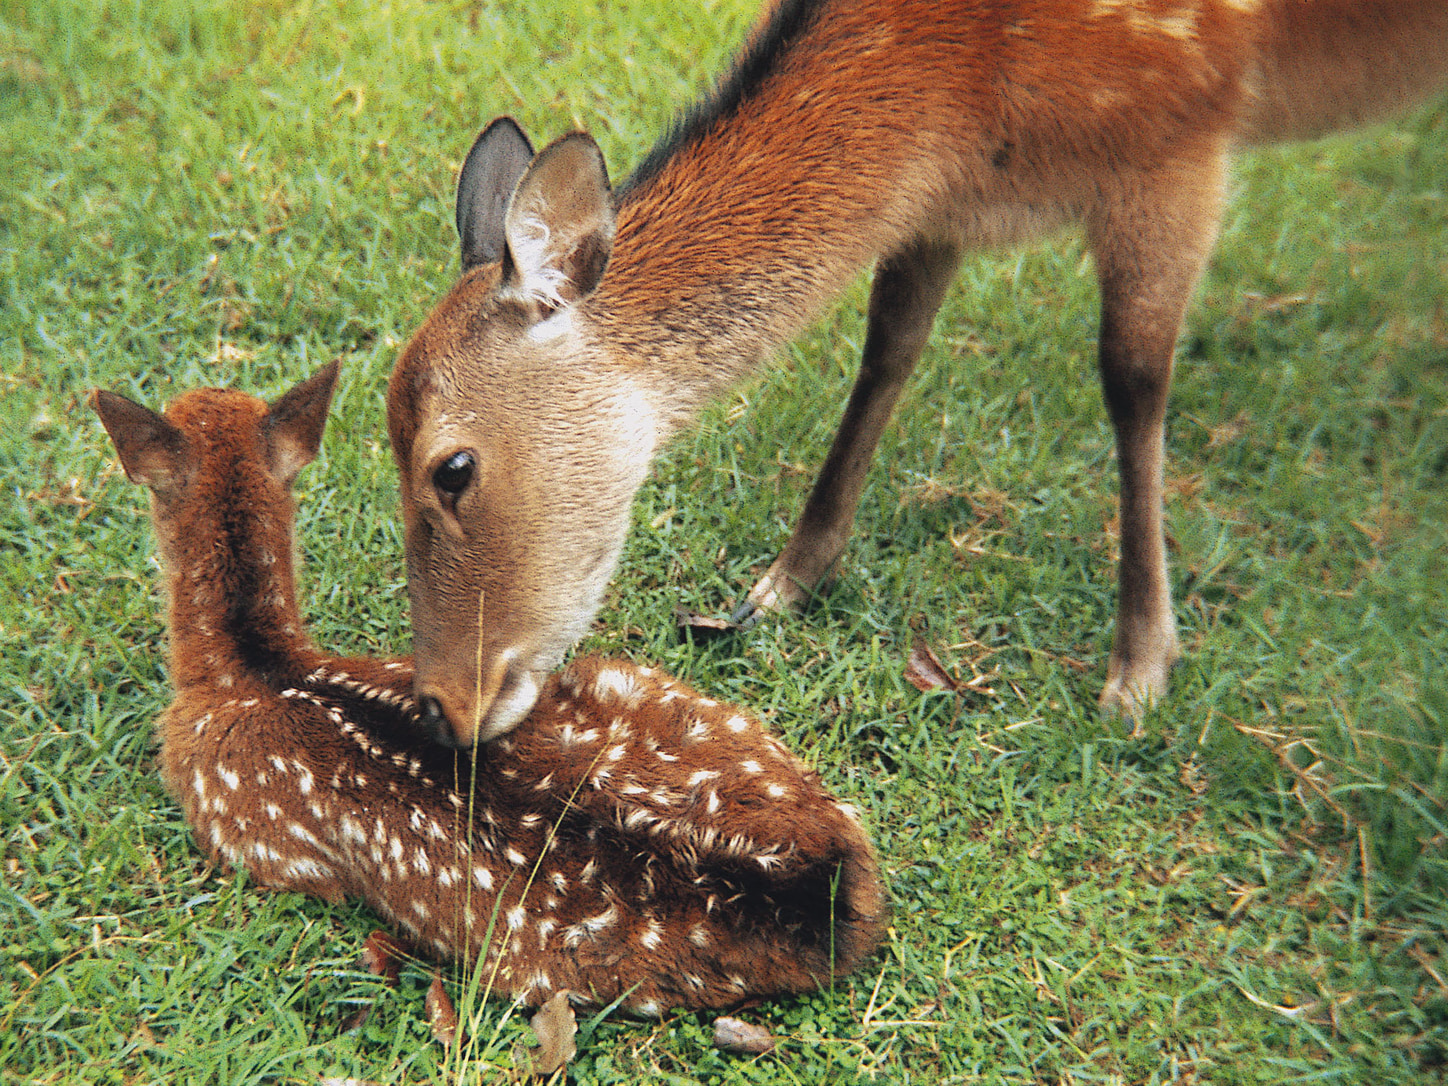 The Deer of Nara Park